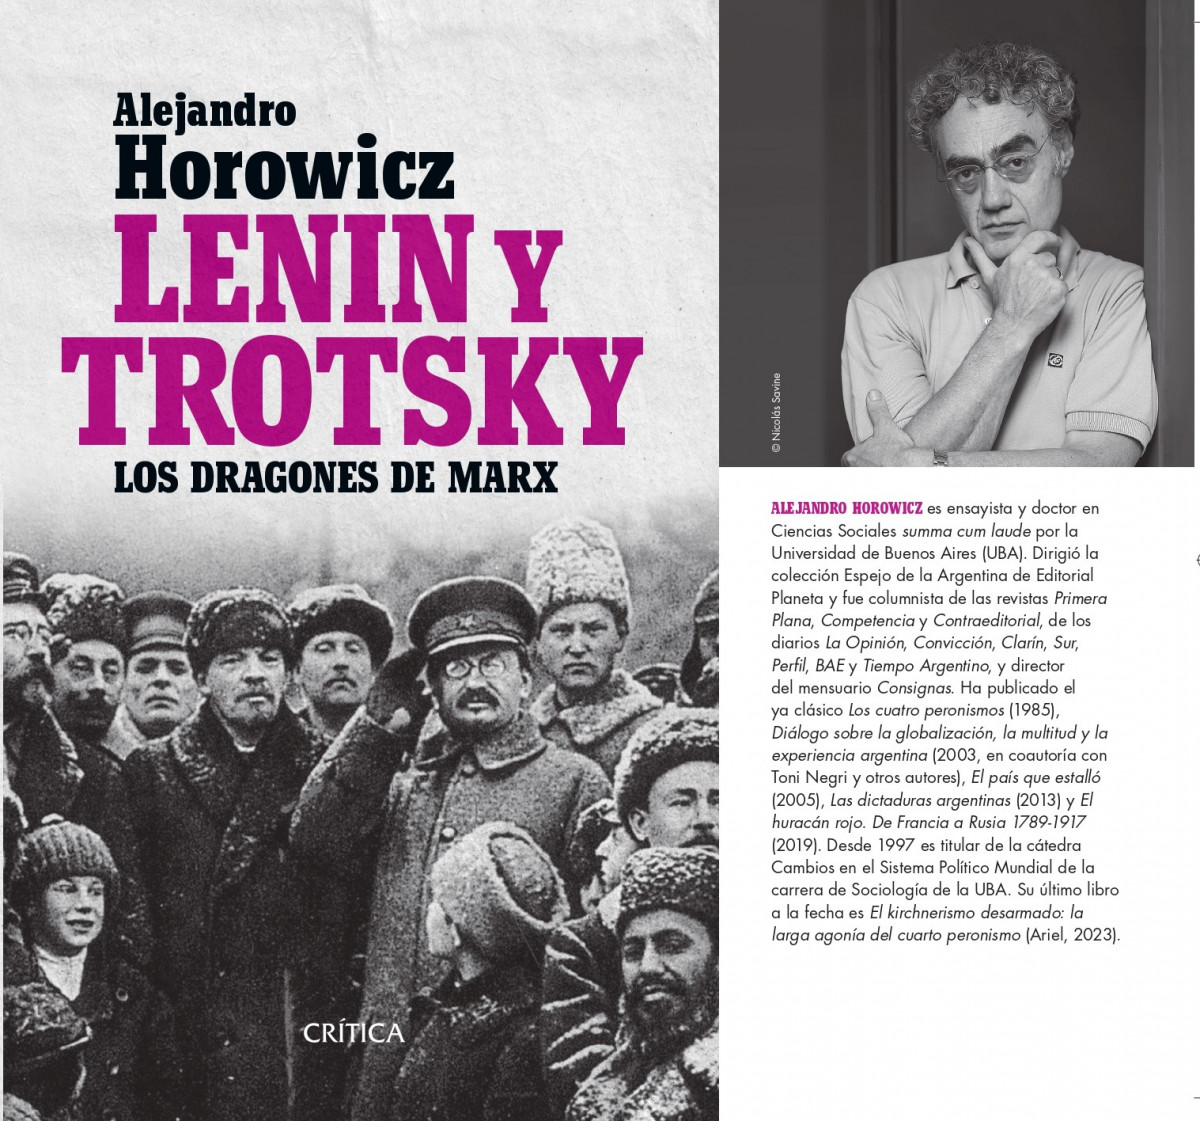 imagen "Horowicz visita el museo de la revolución". Conversación con el autor de Lenin y Trotsky: los dragones de Marx